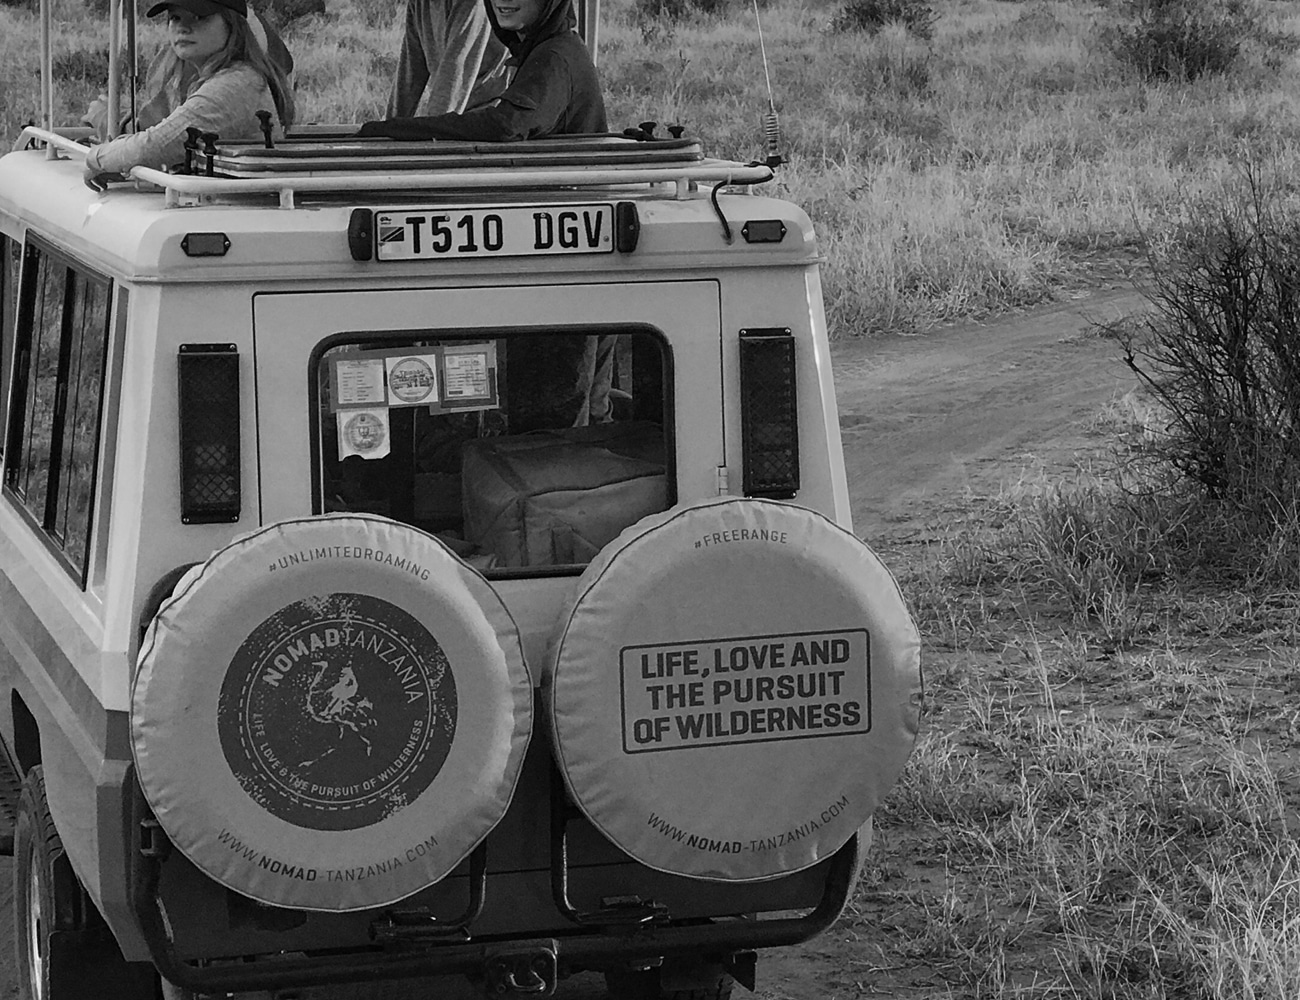 Nomad Tanzania Tour Bus